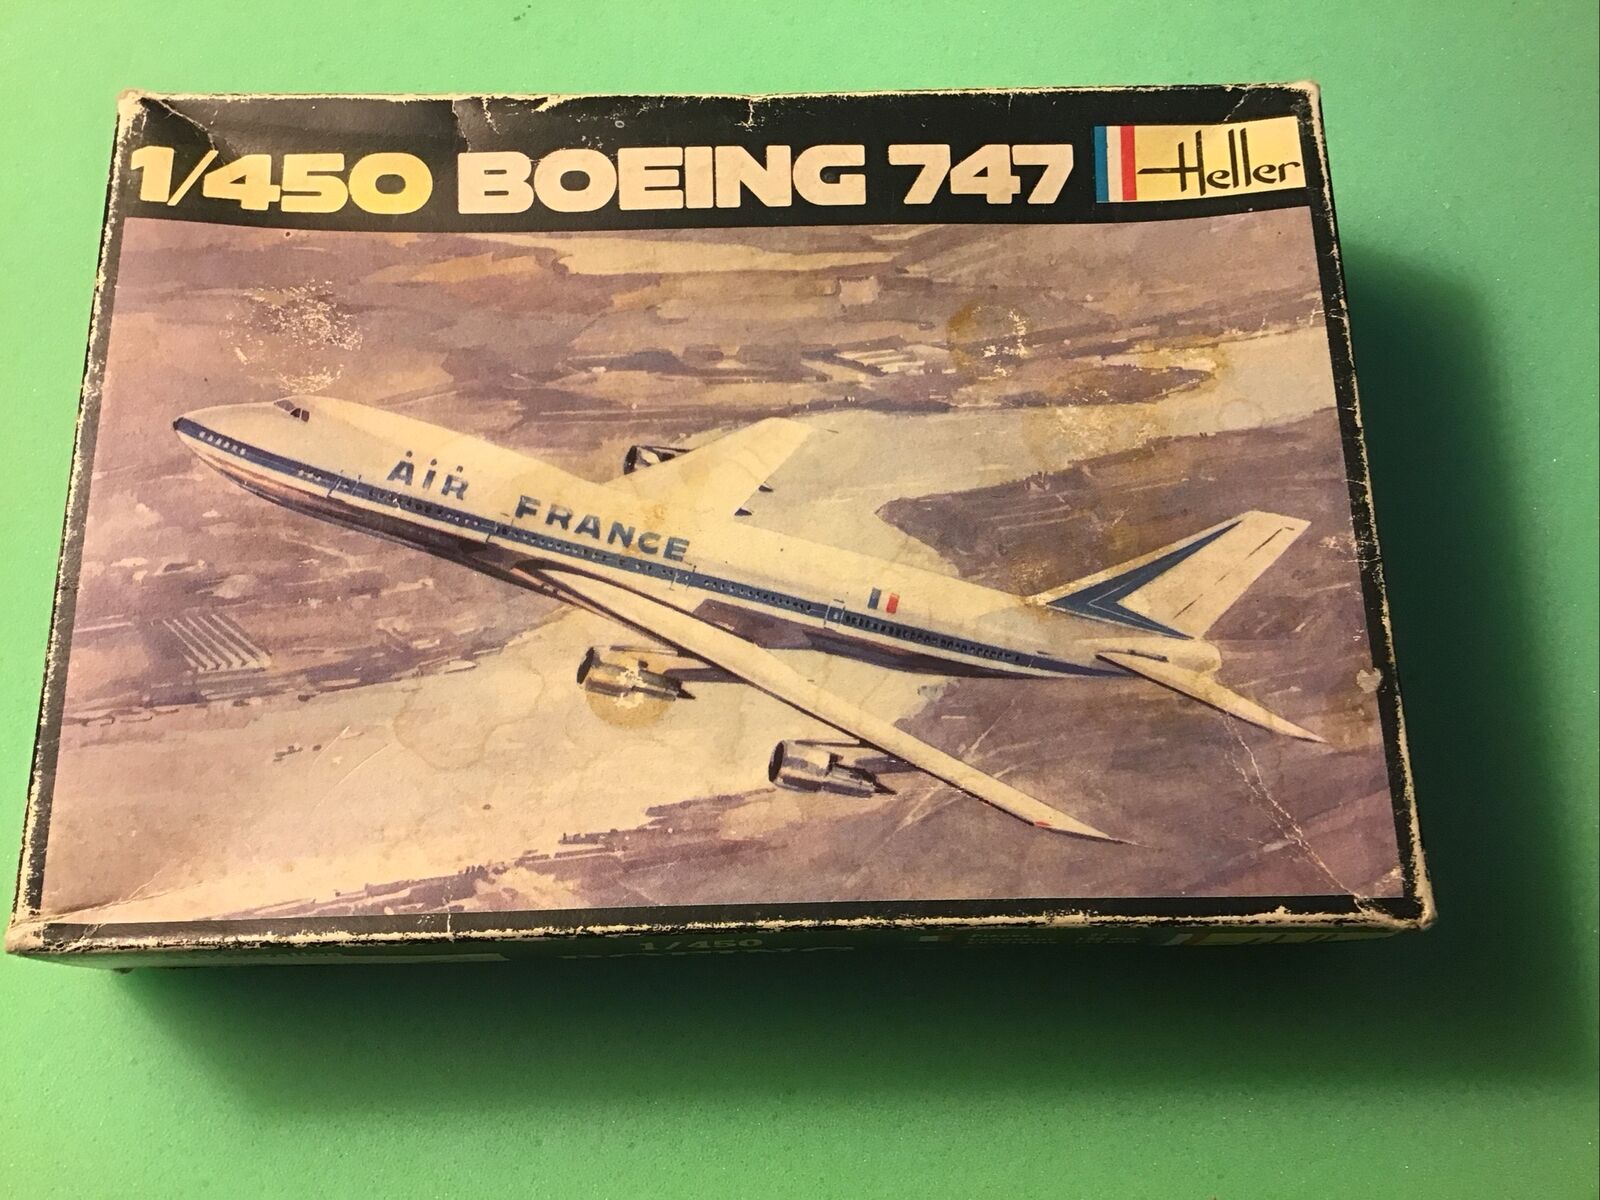 Vintage Heller Cadet Boeing Air France 747 1/450 Scale Model Kit (No. 037)